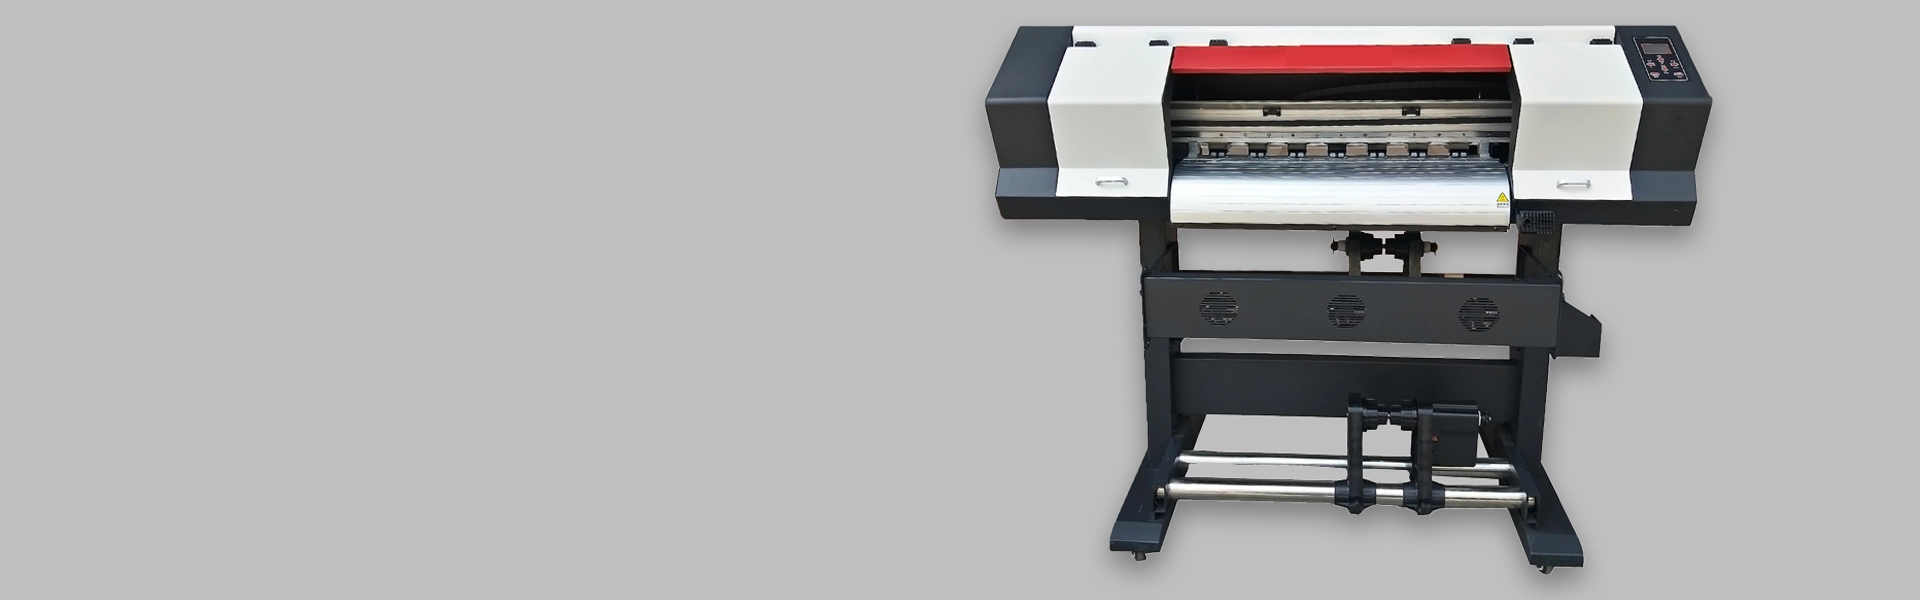 Impresora XP600 de 70 cm